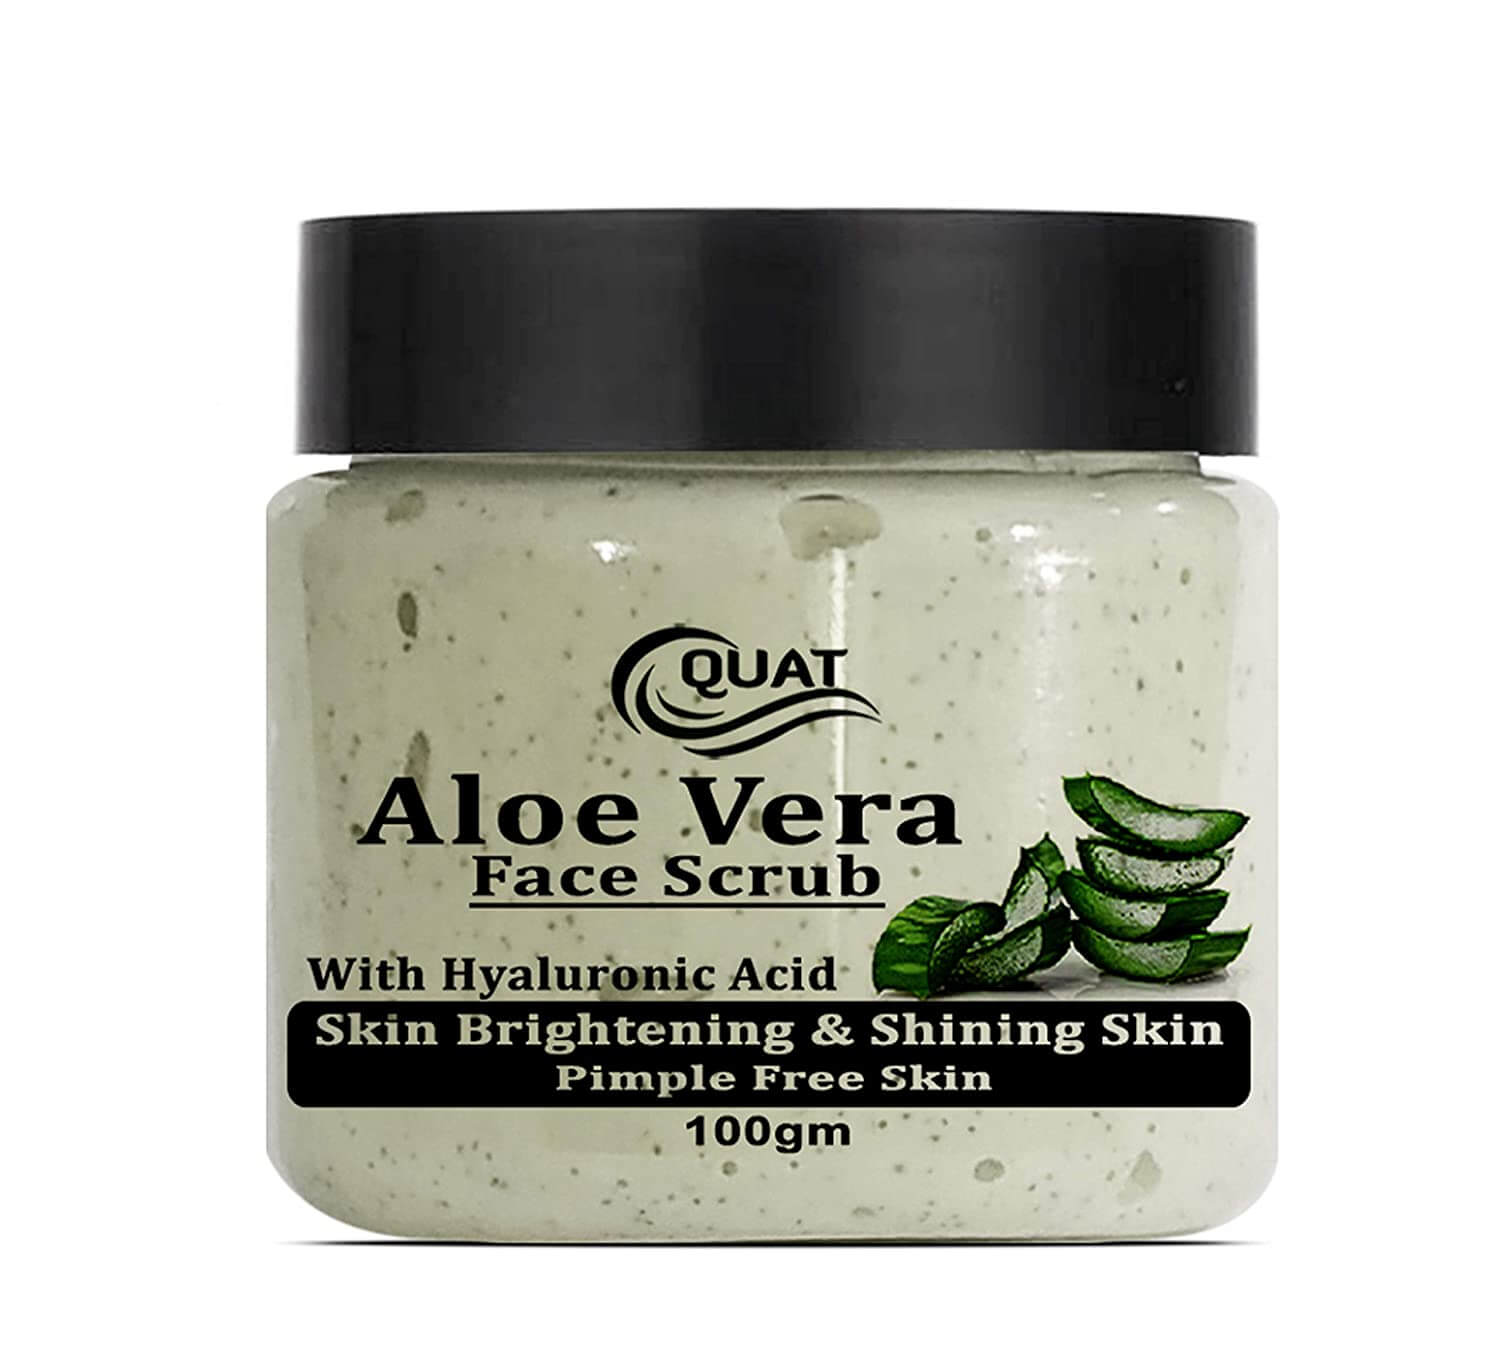 Quat Aloe Vera Pimple Free Skin Face Scrub 